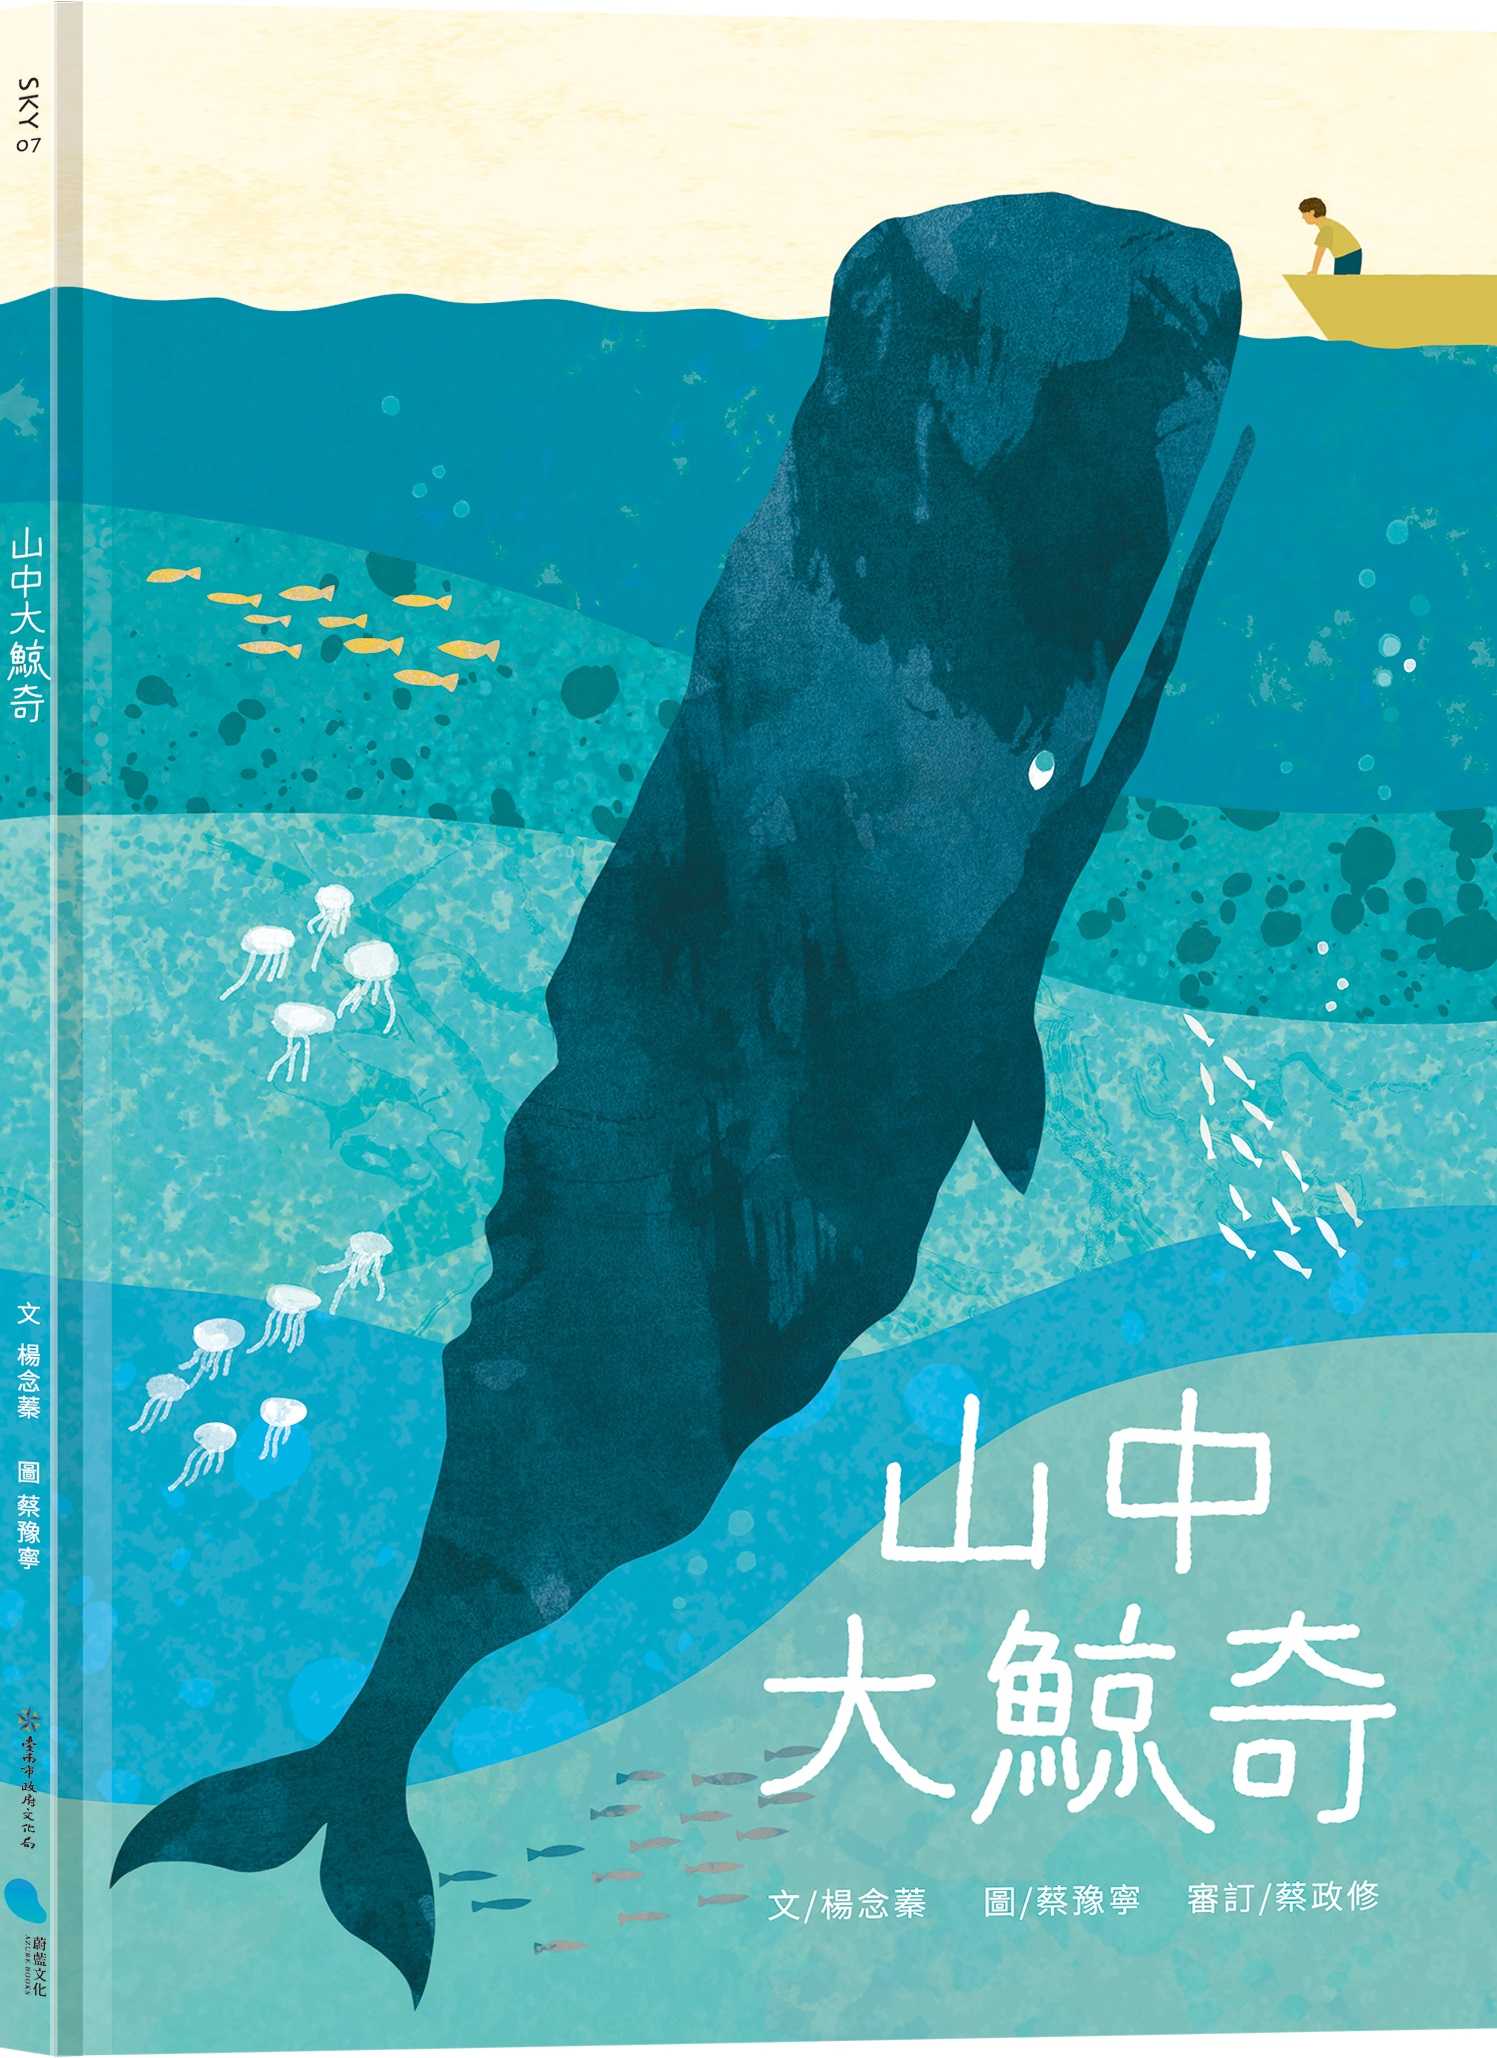 【蔚藍文化】山中大鯨奇